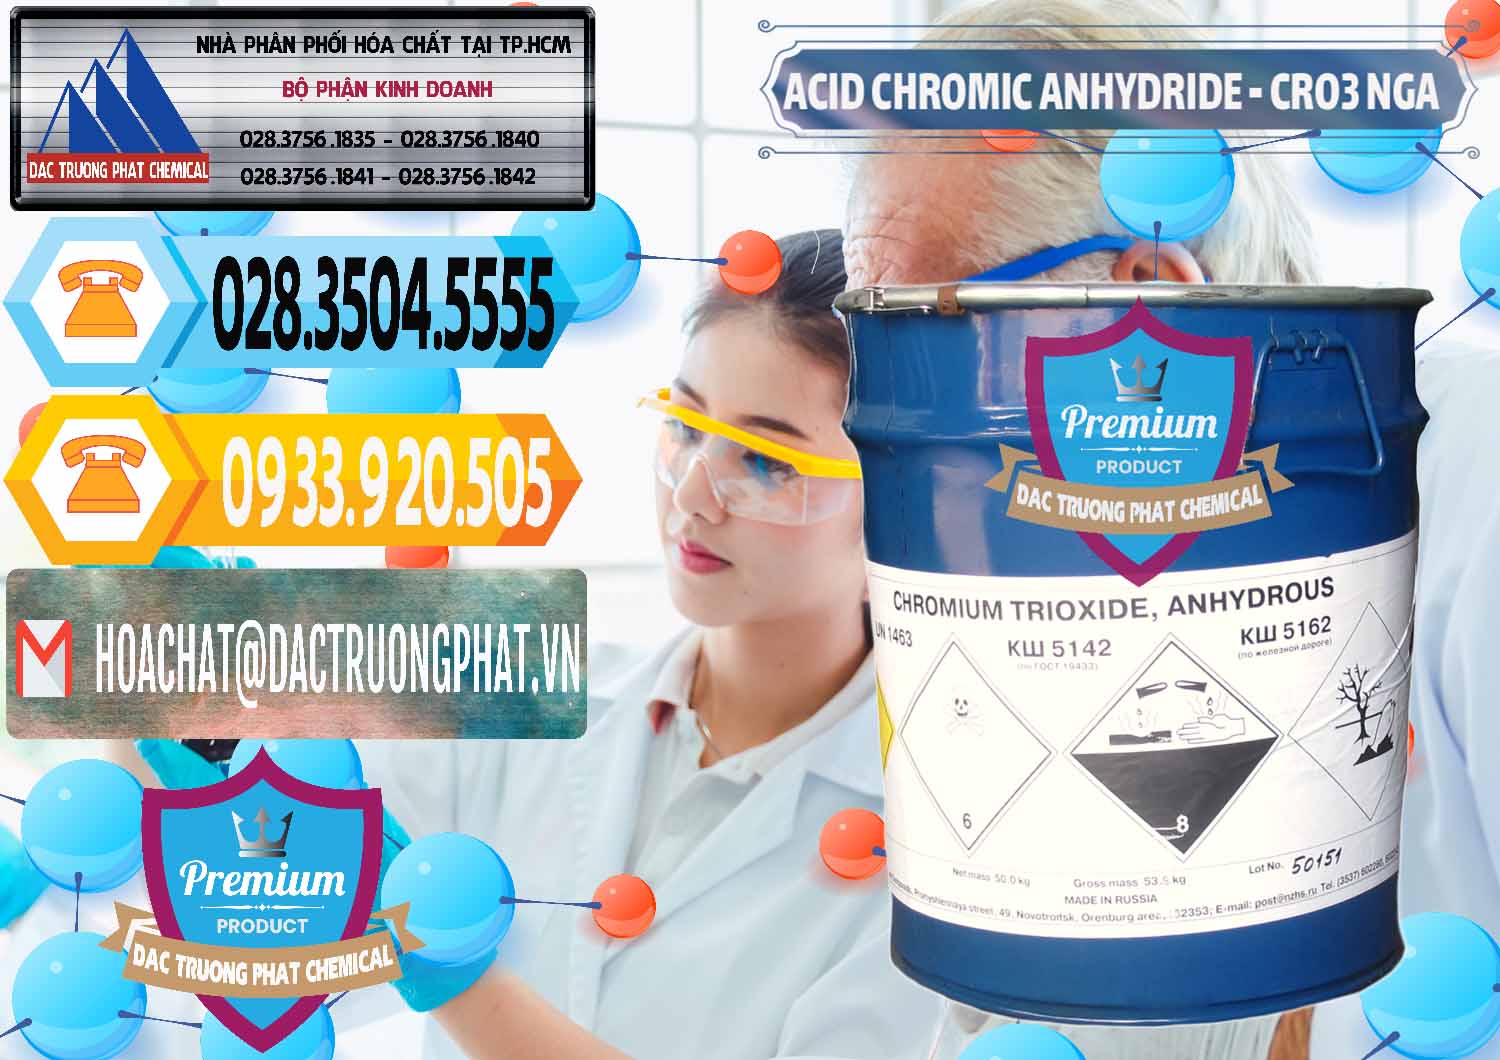 Công ty cung ứng & bán Acid Chromic Anhydride - Cromic CRO3 Nga Russia - 0006 - Phân phối - cung ứng hóa chất tại TP.HCM - hoachattayrua.net